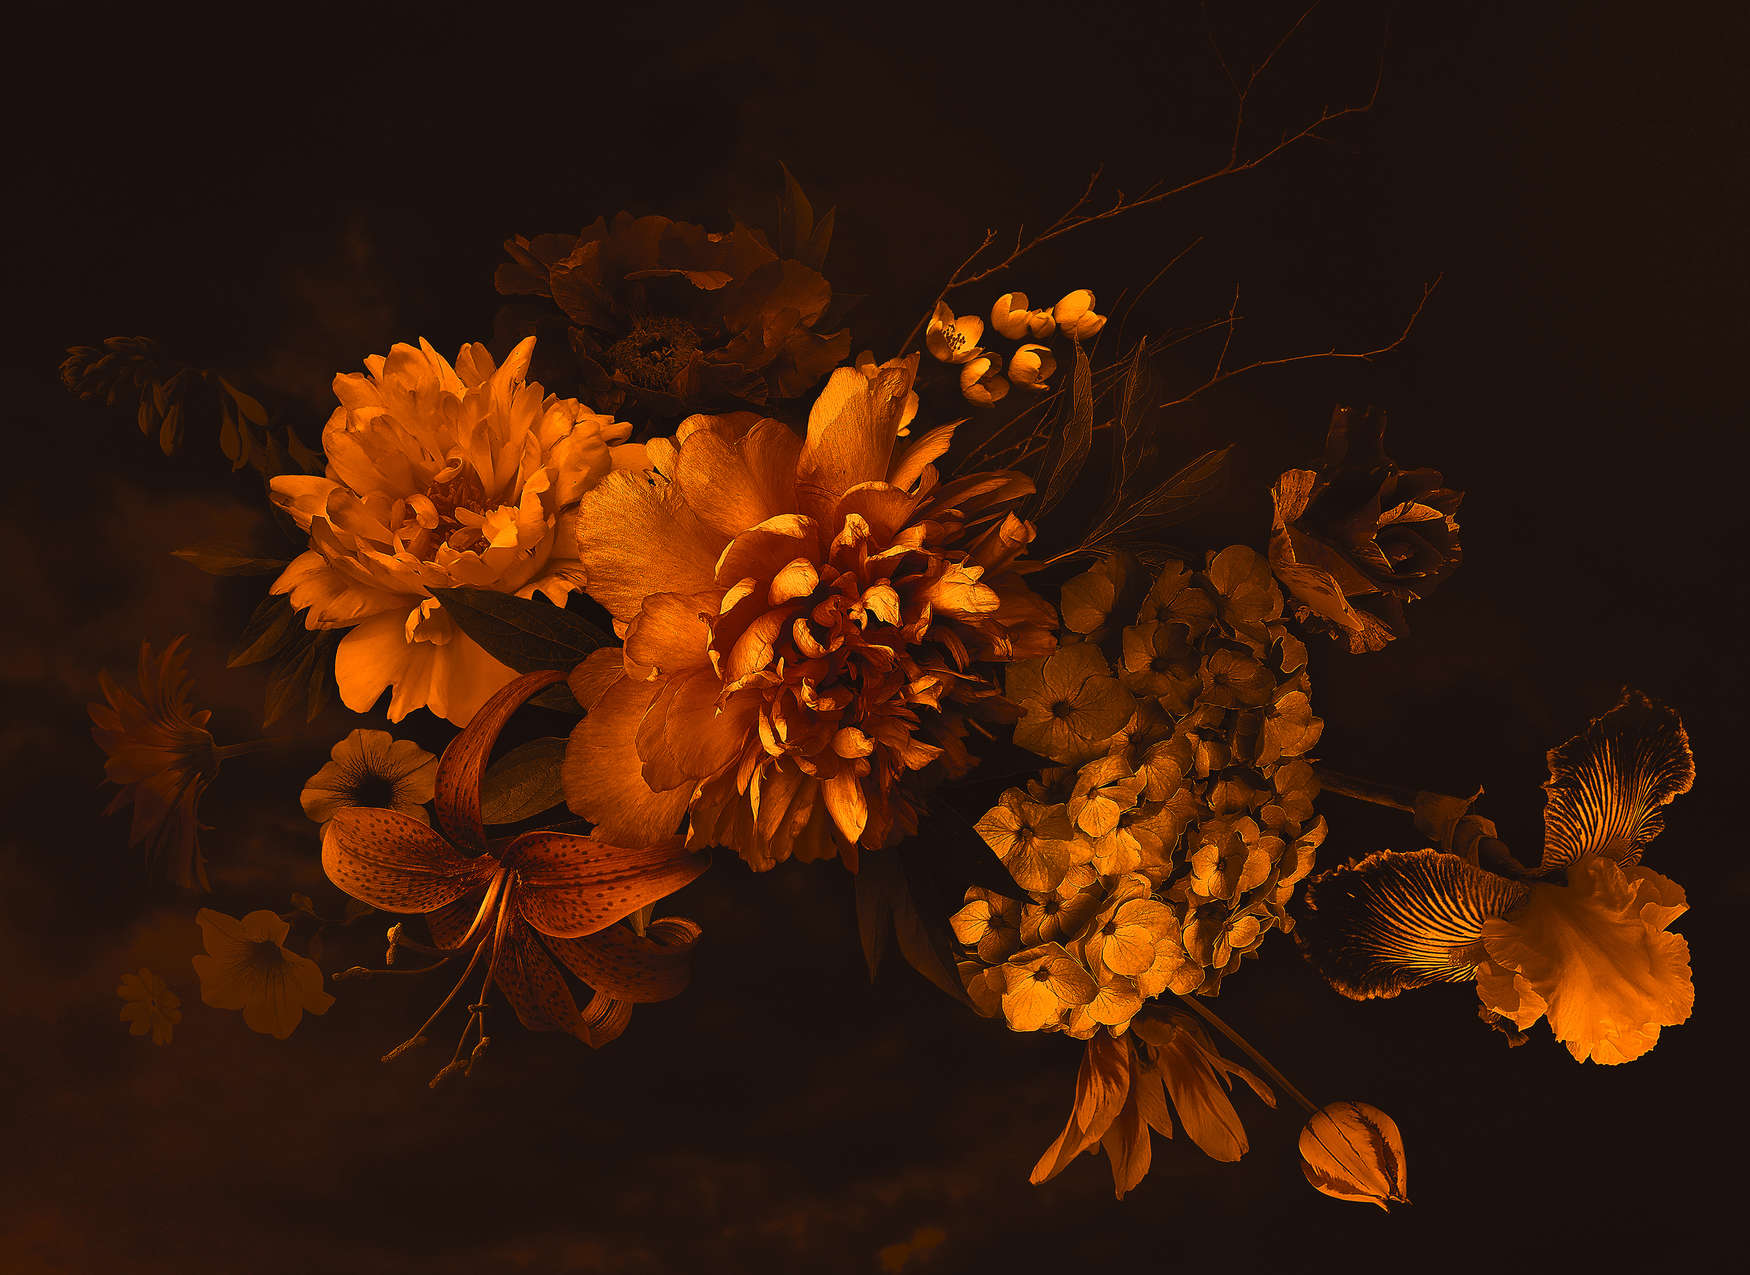             Botanical Style Bouquet - Orange, Black
        